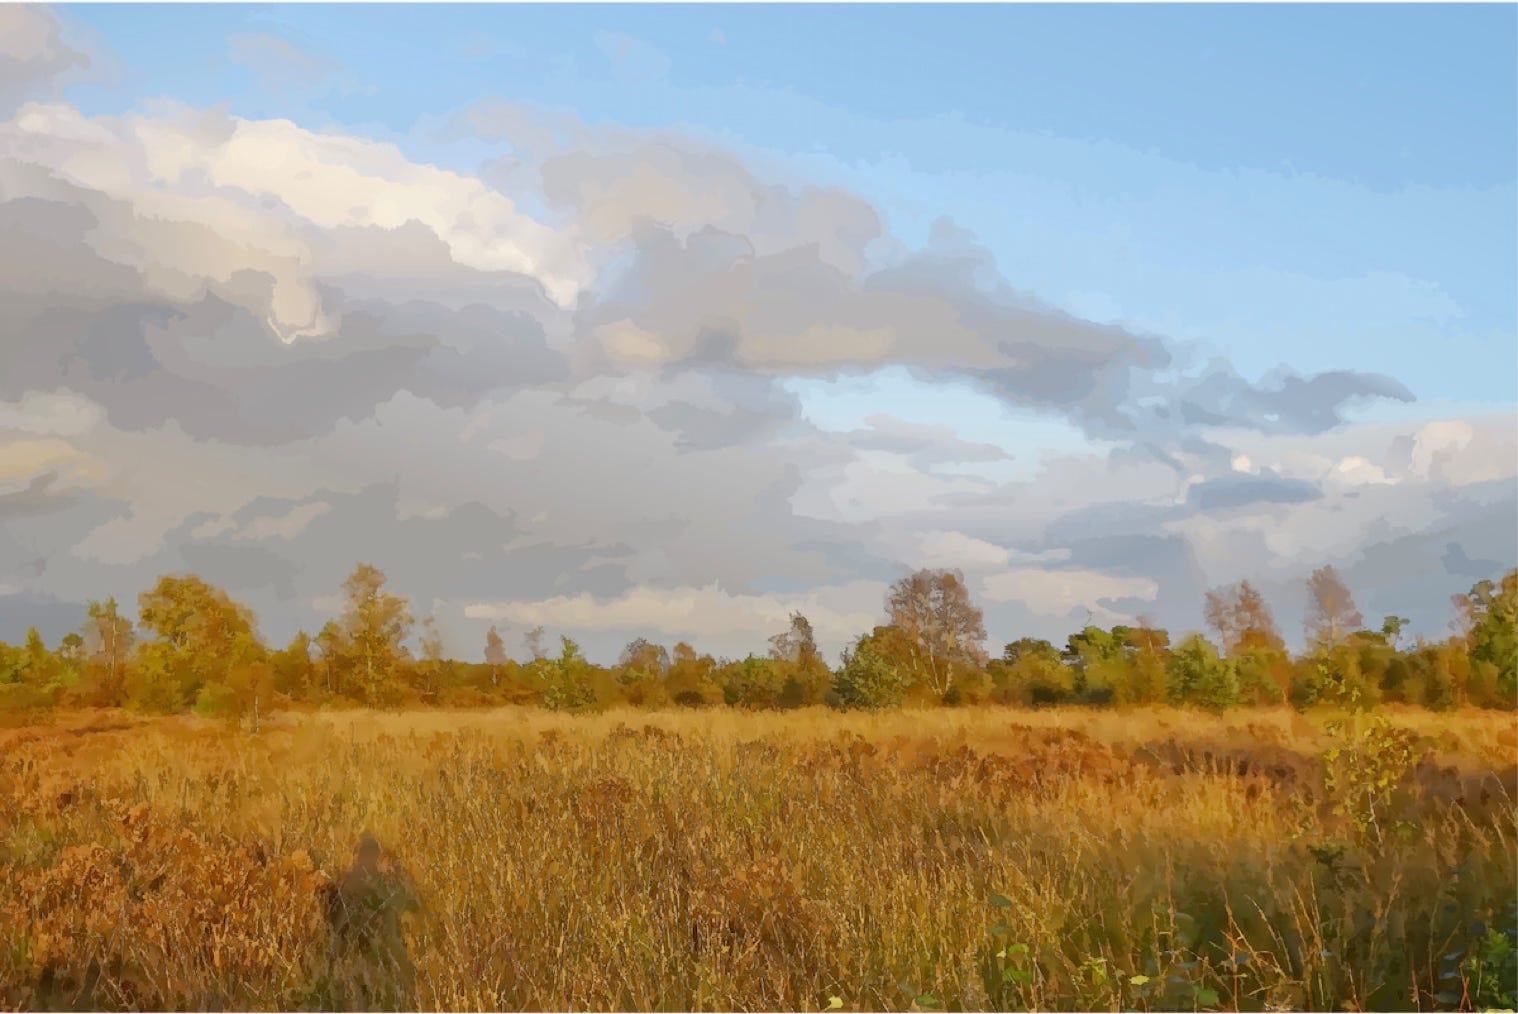 Vectorized image of a landscape in Huis ter Heide, Drenthe, Netherlands